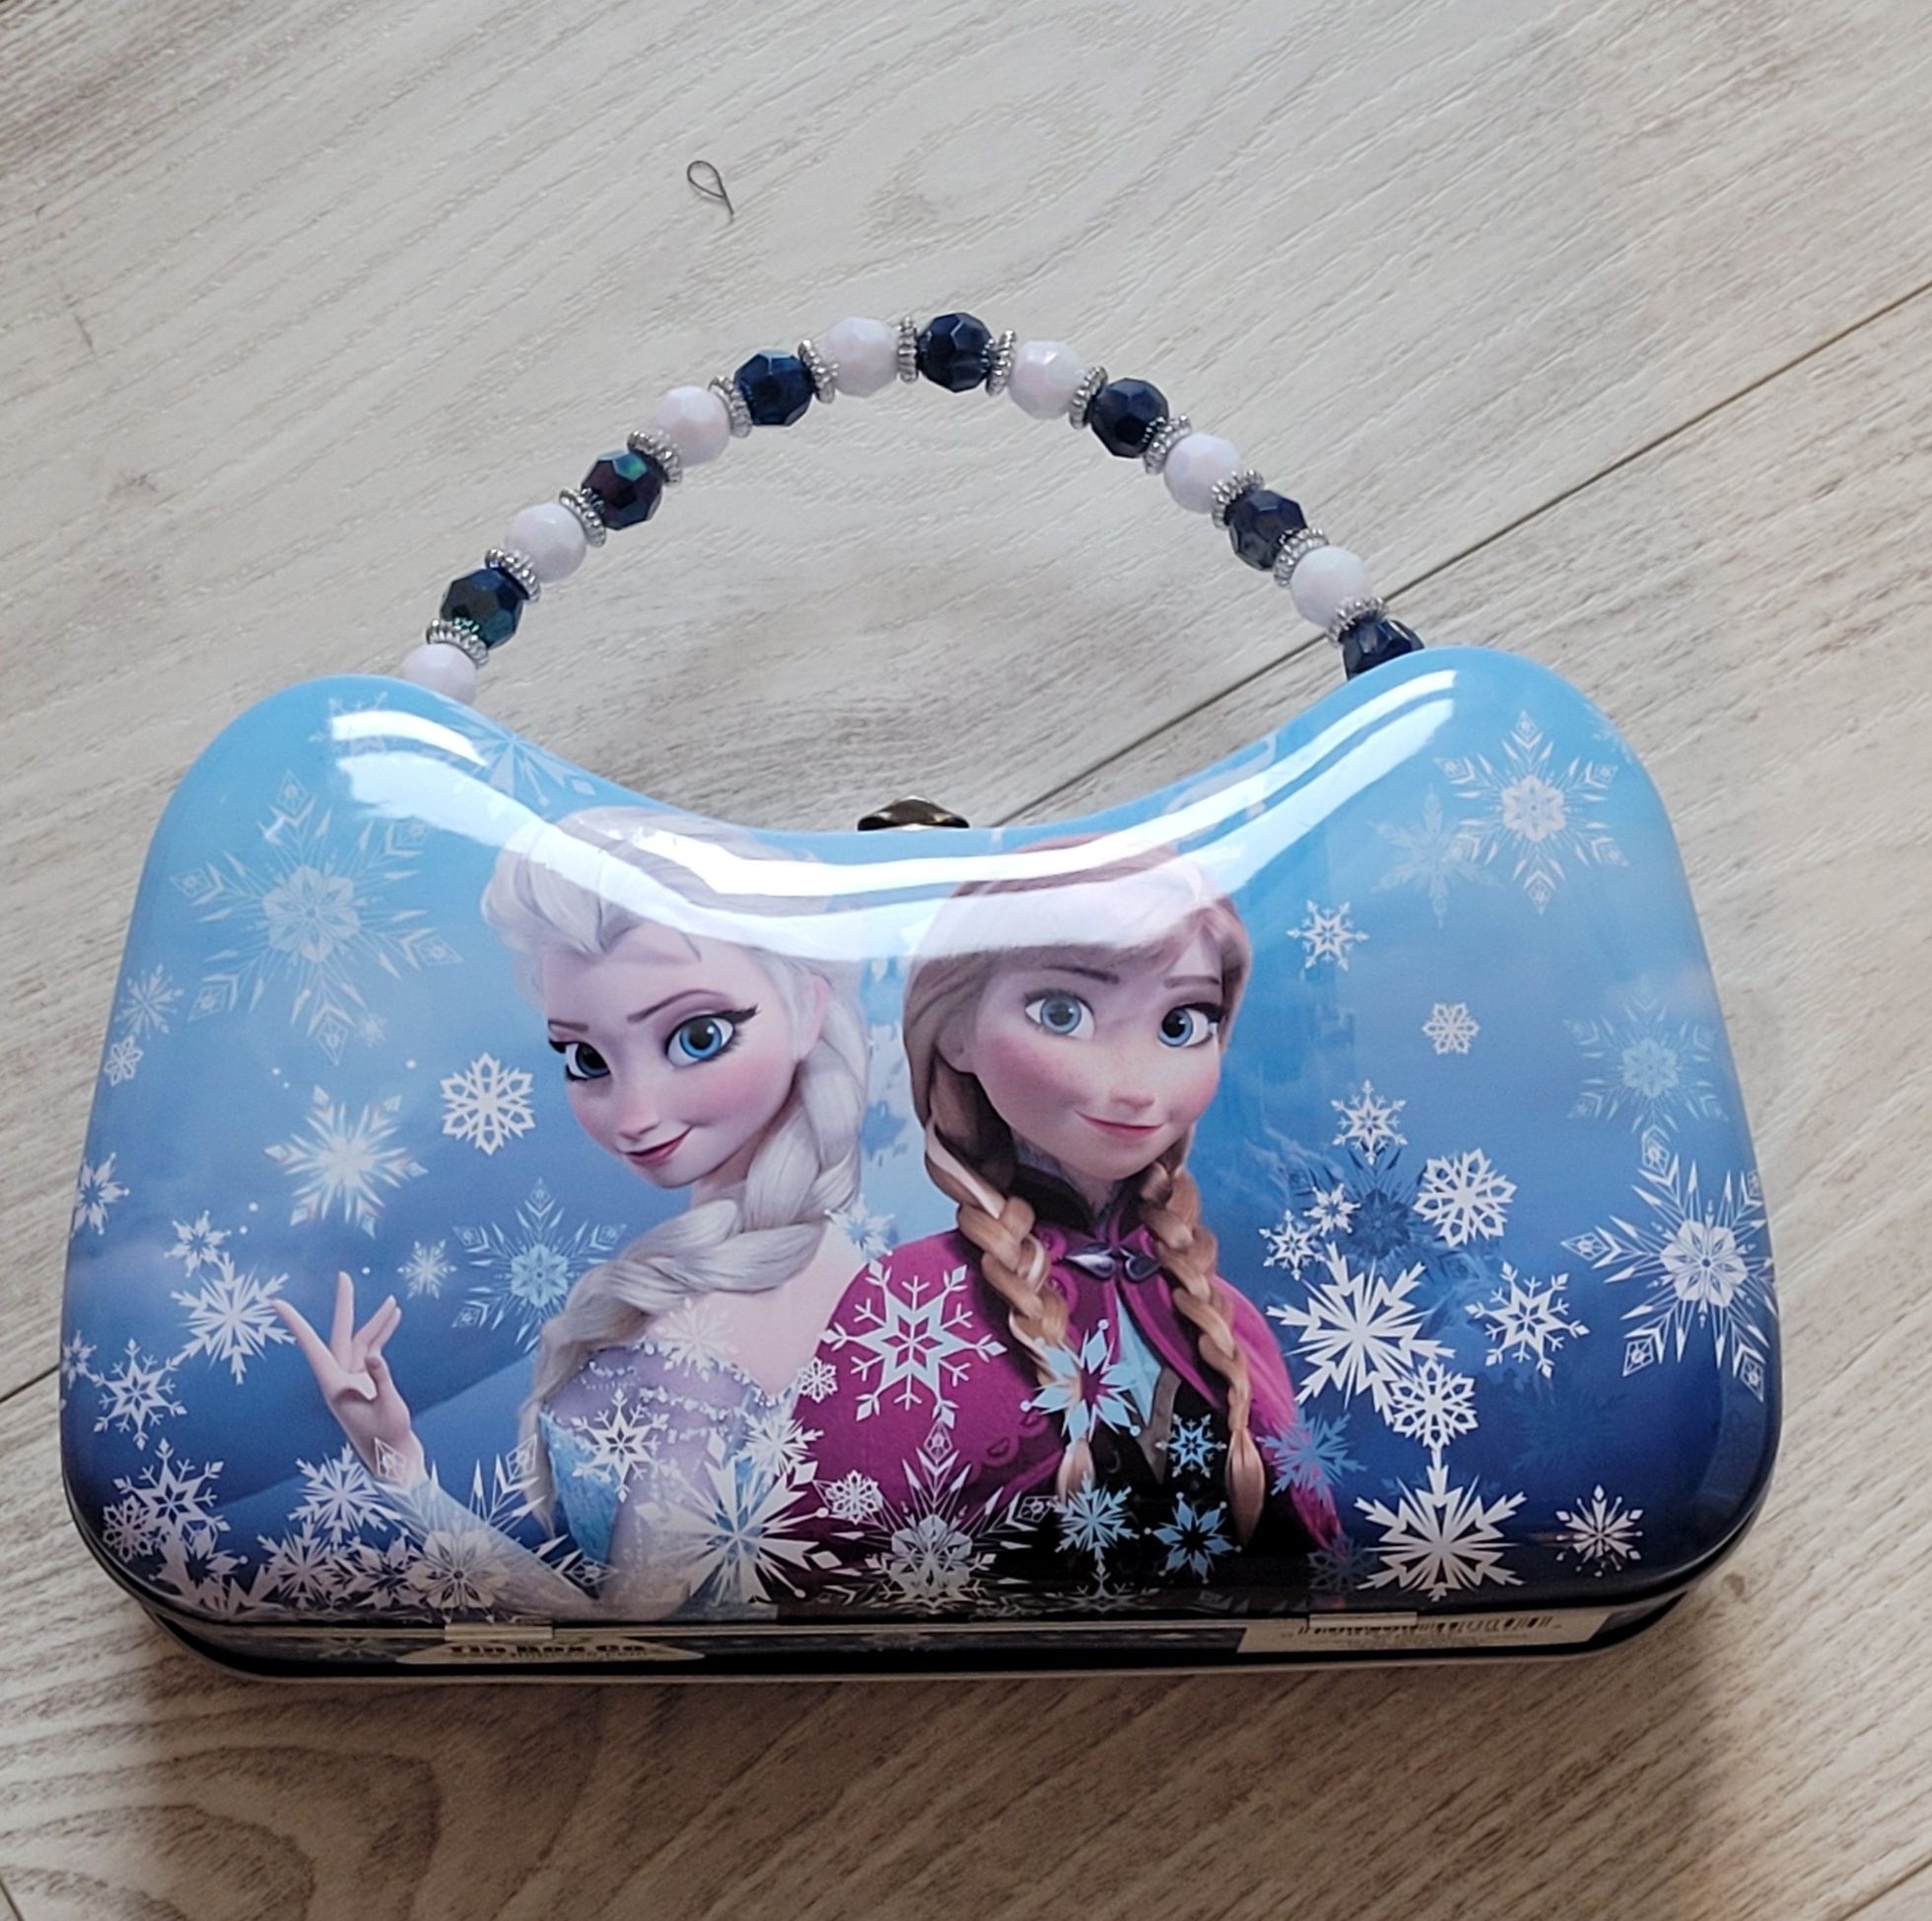 Śliczne pudełko Elza i Anna Frozen,Torebka, Kuferek Kraina Lodu Disney